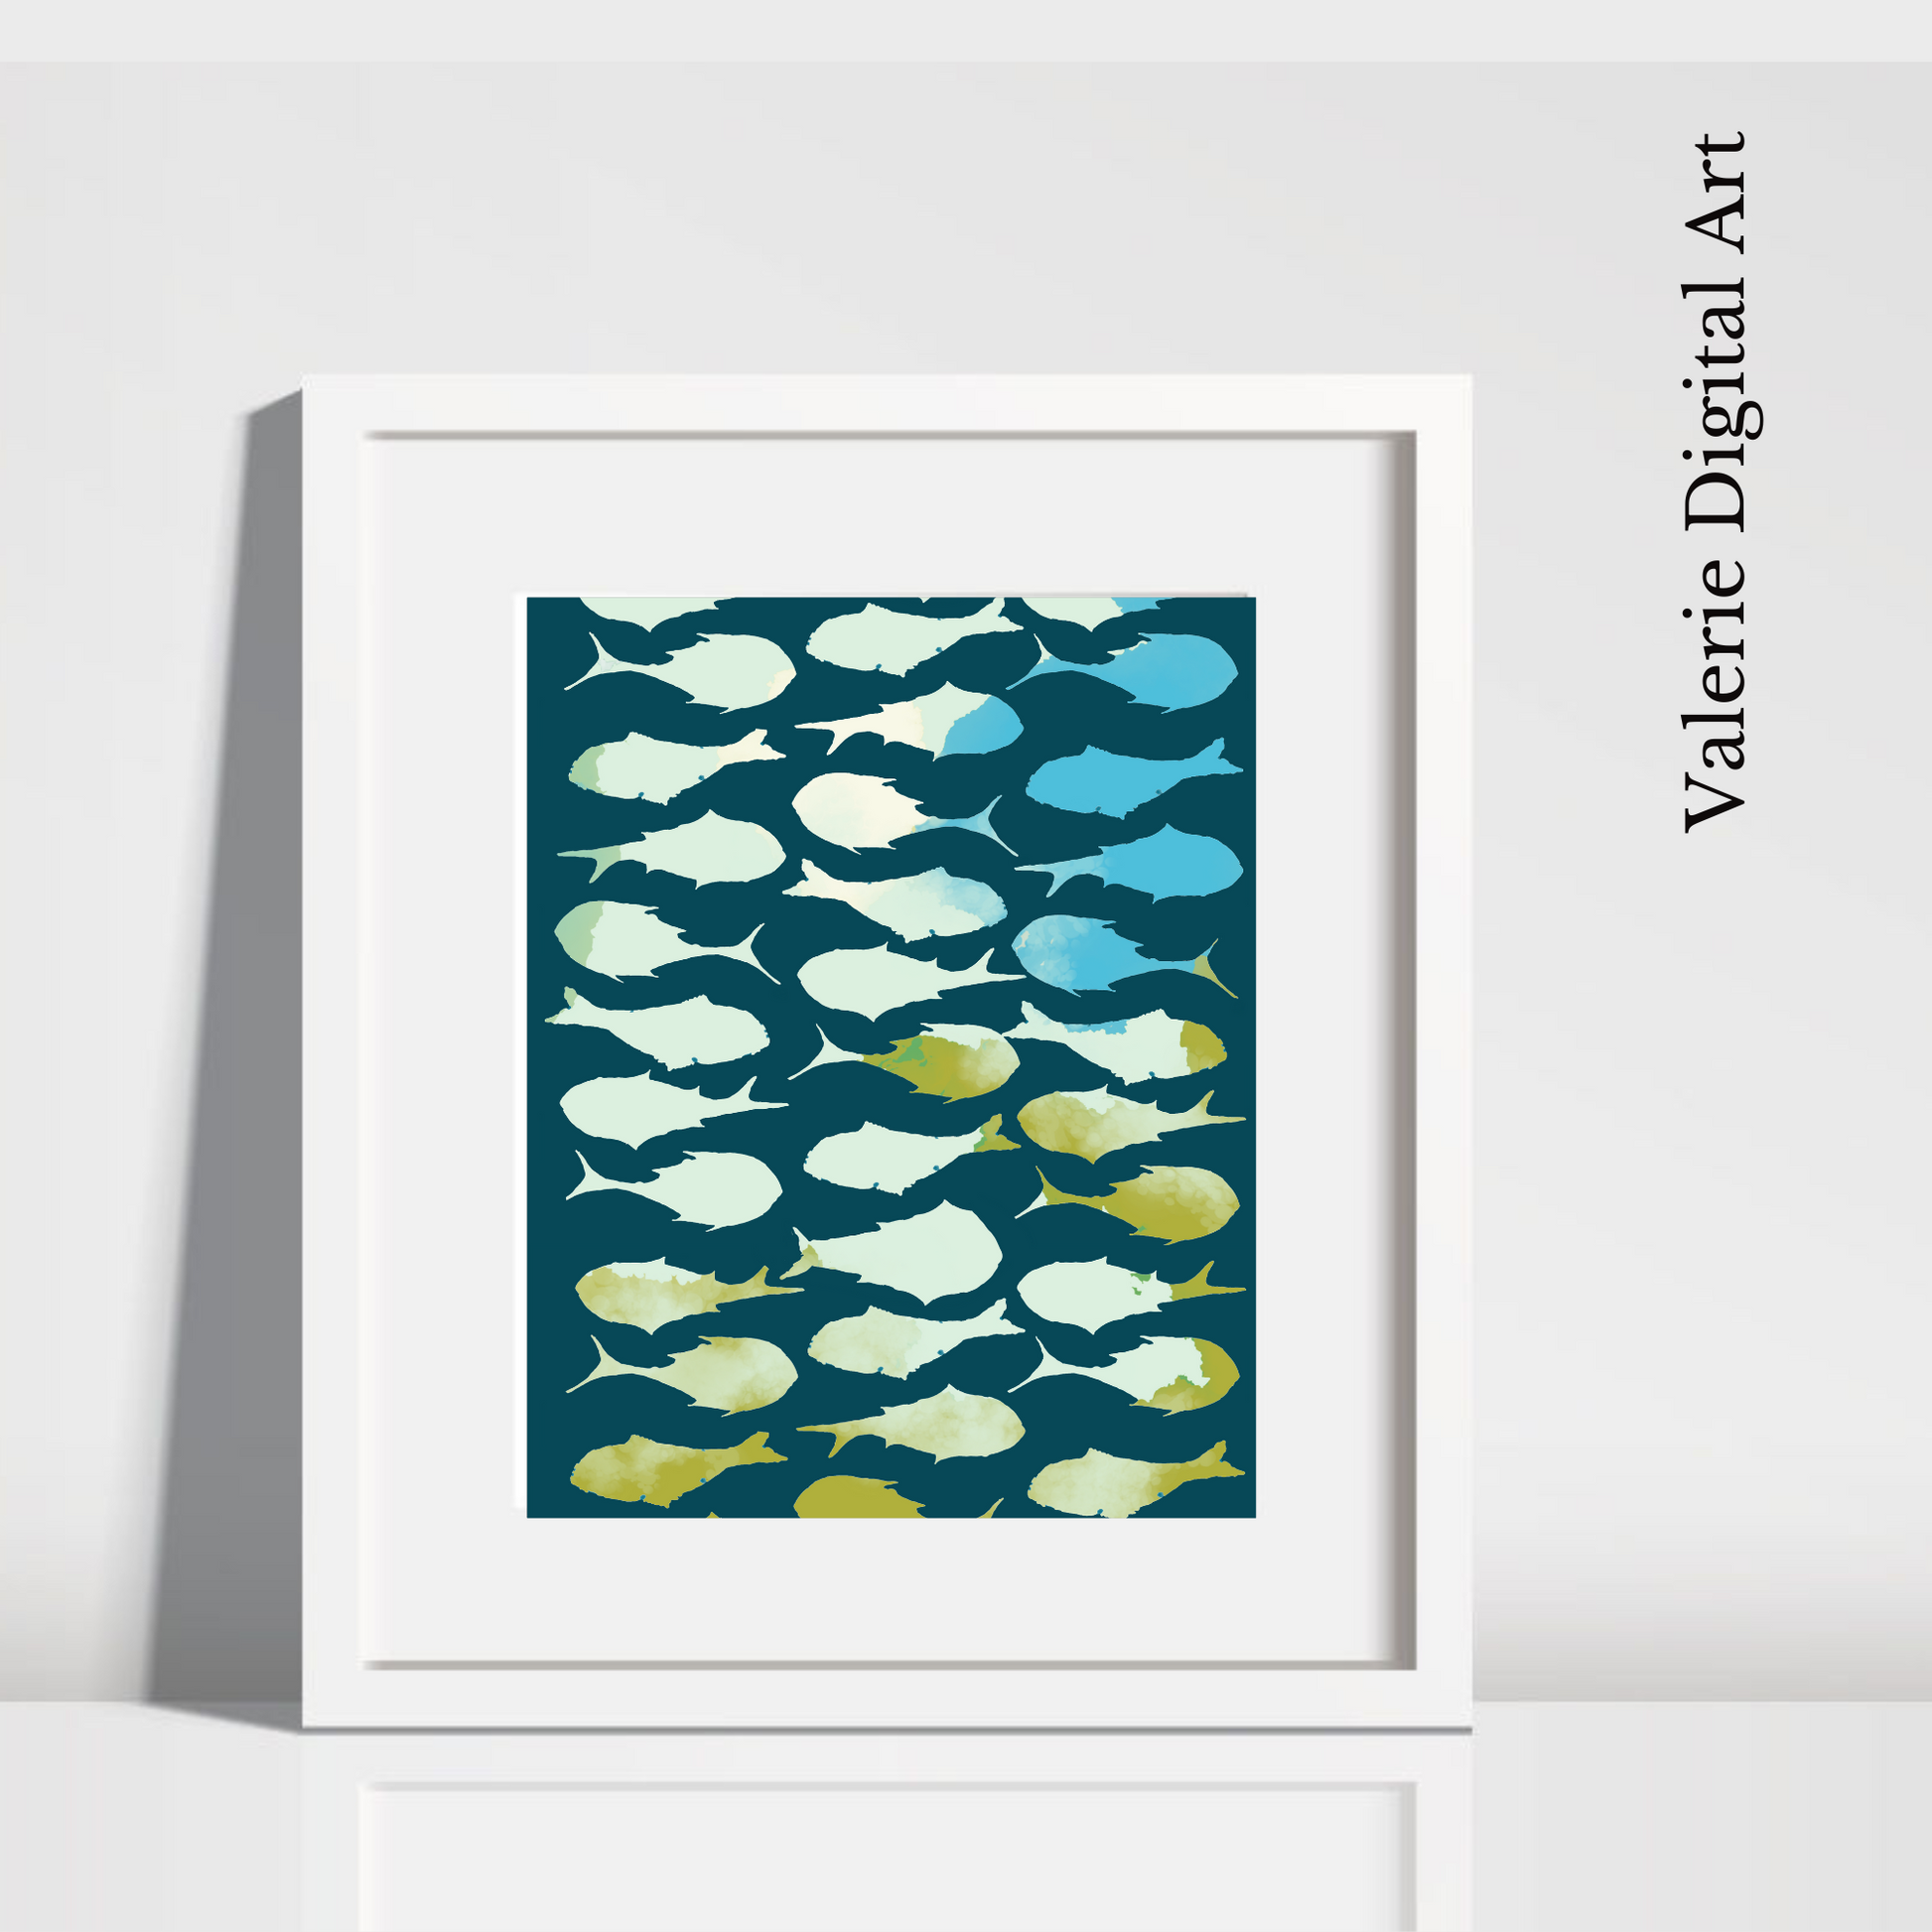 A SCHOOL OF FISH Hahnemühle German Etching Print - valerie-digital-art